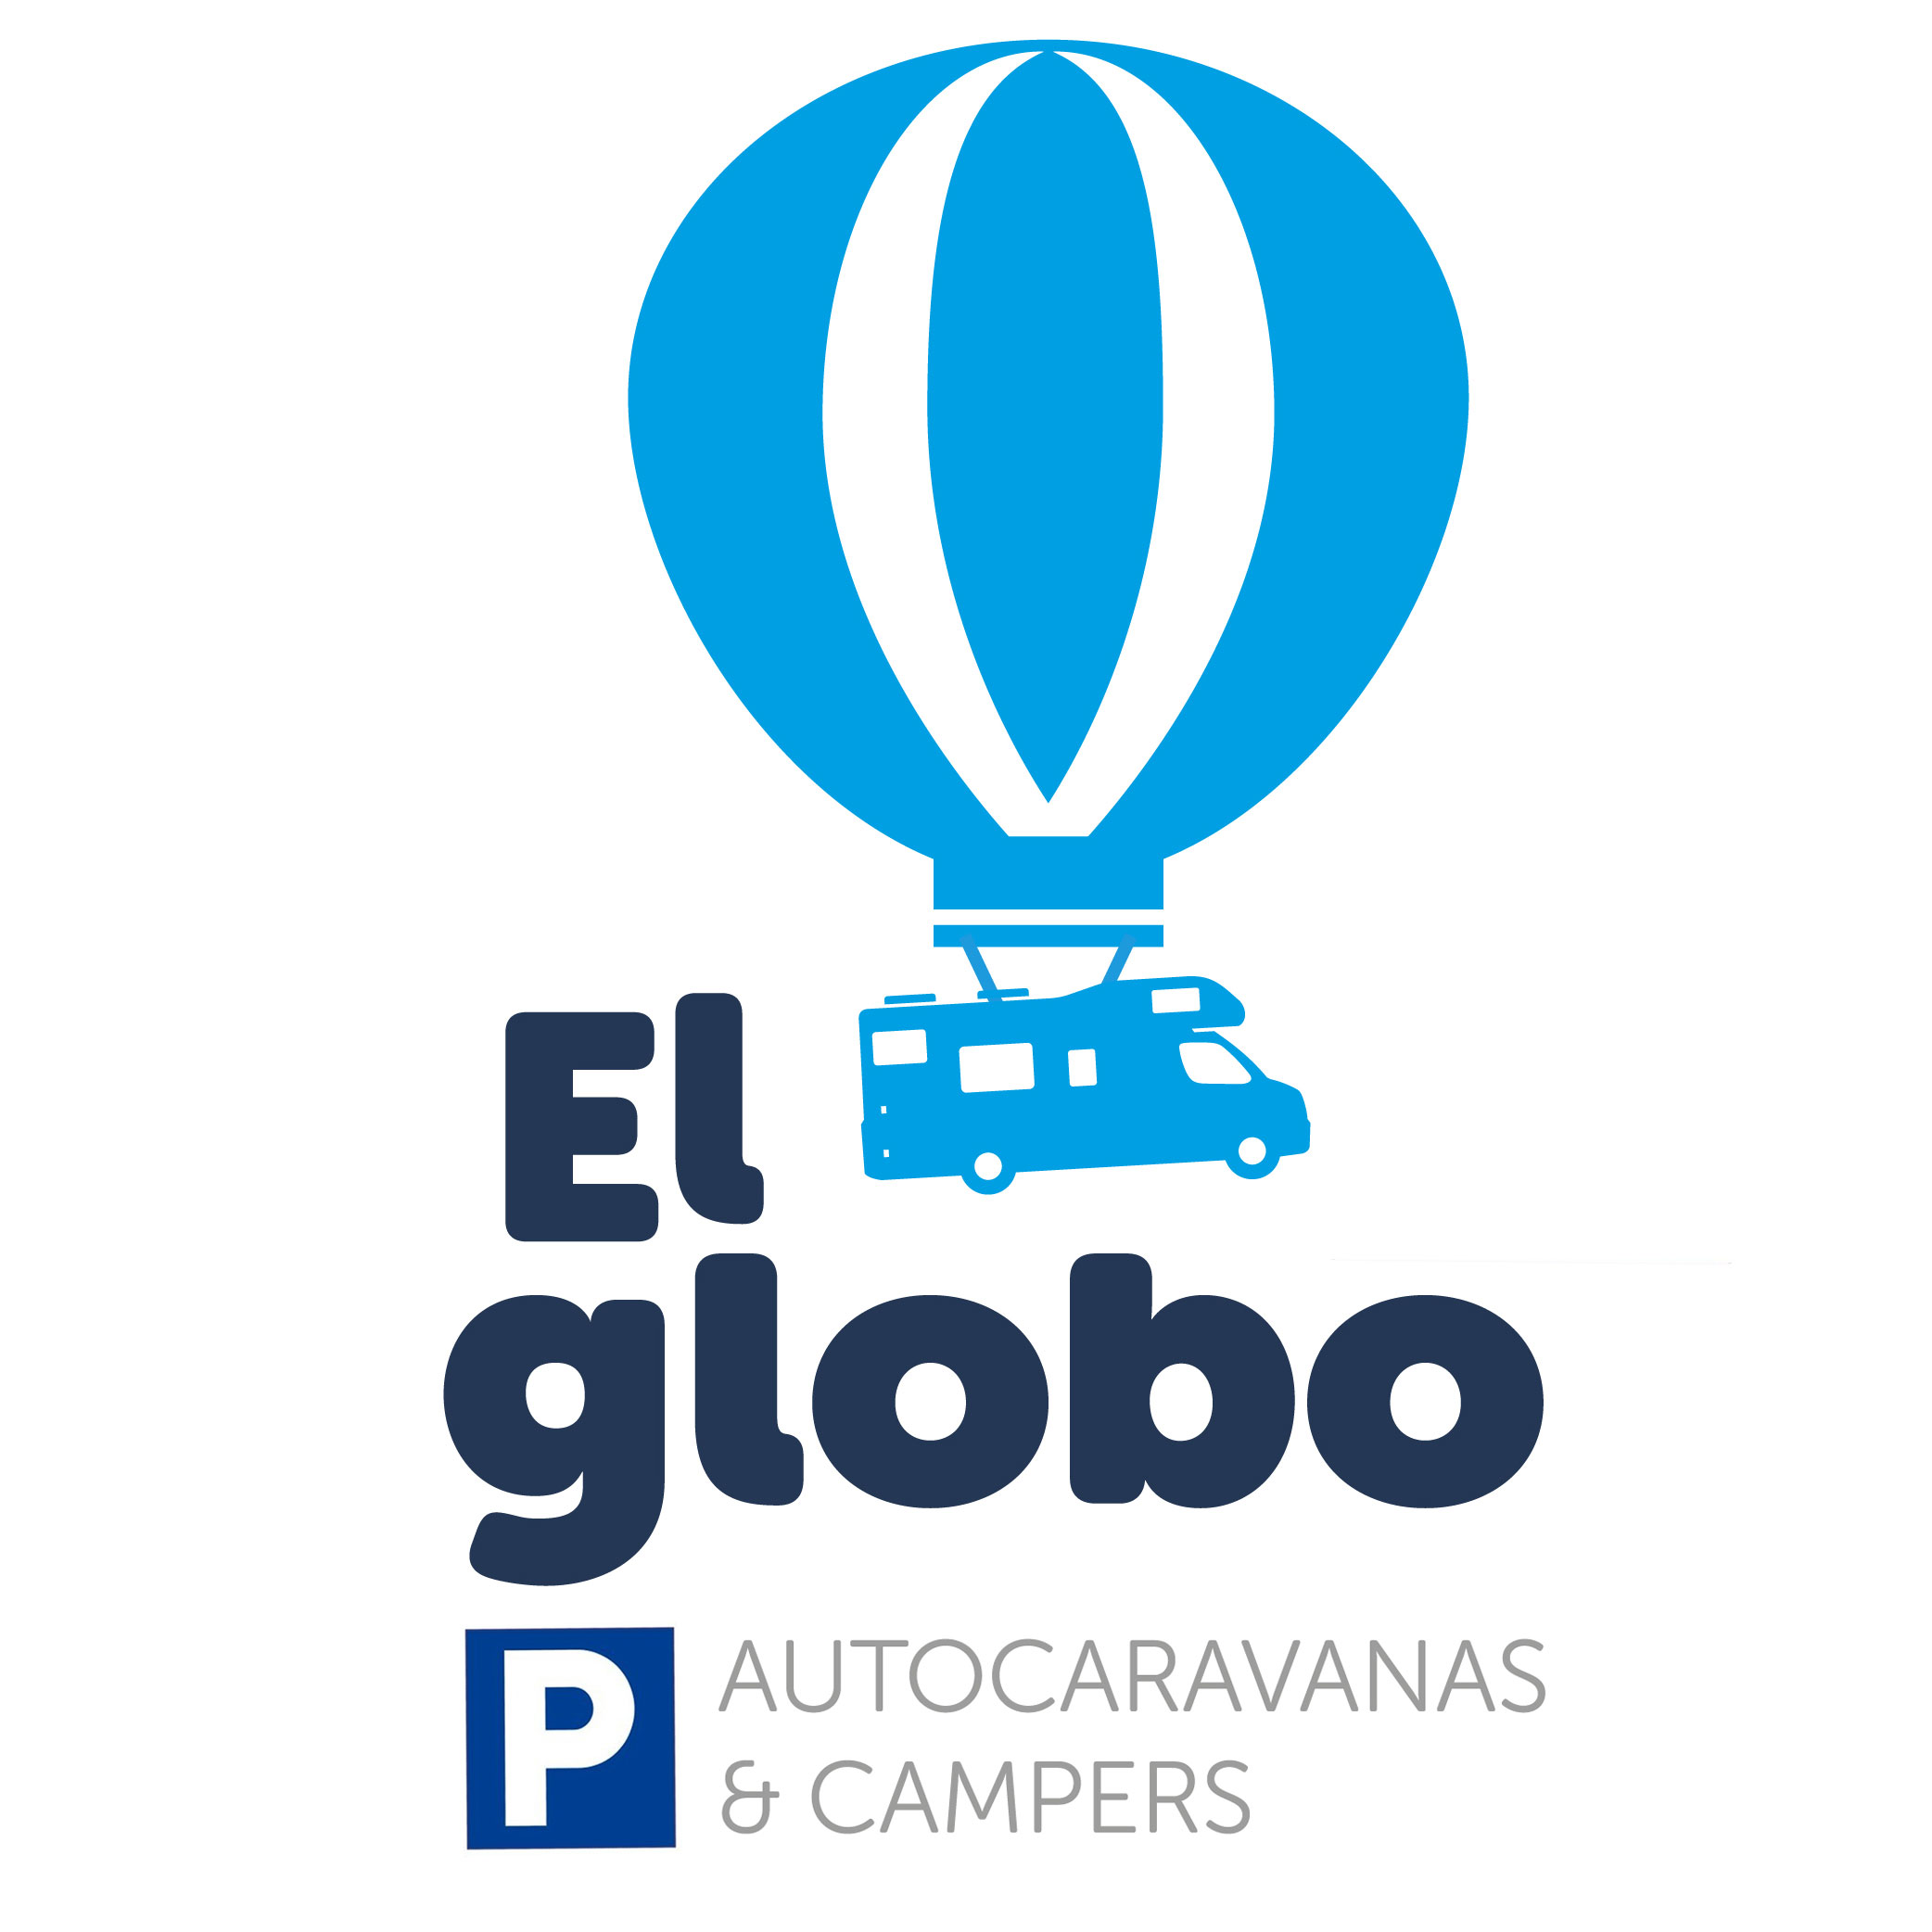 Autocaravanas y campers El Globo